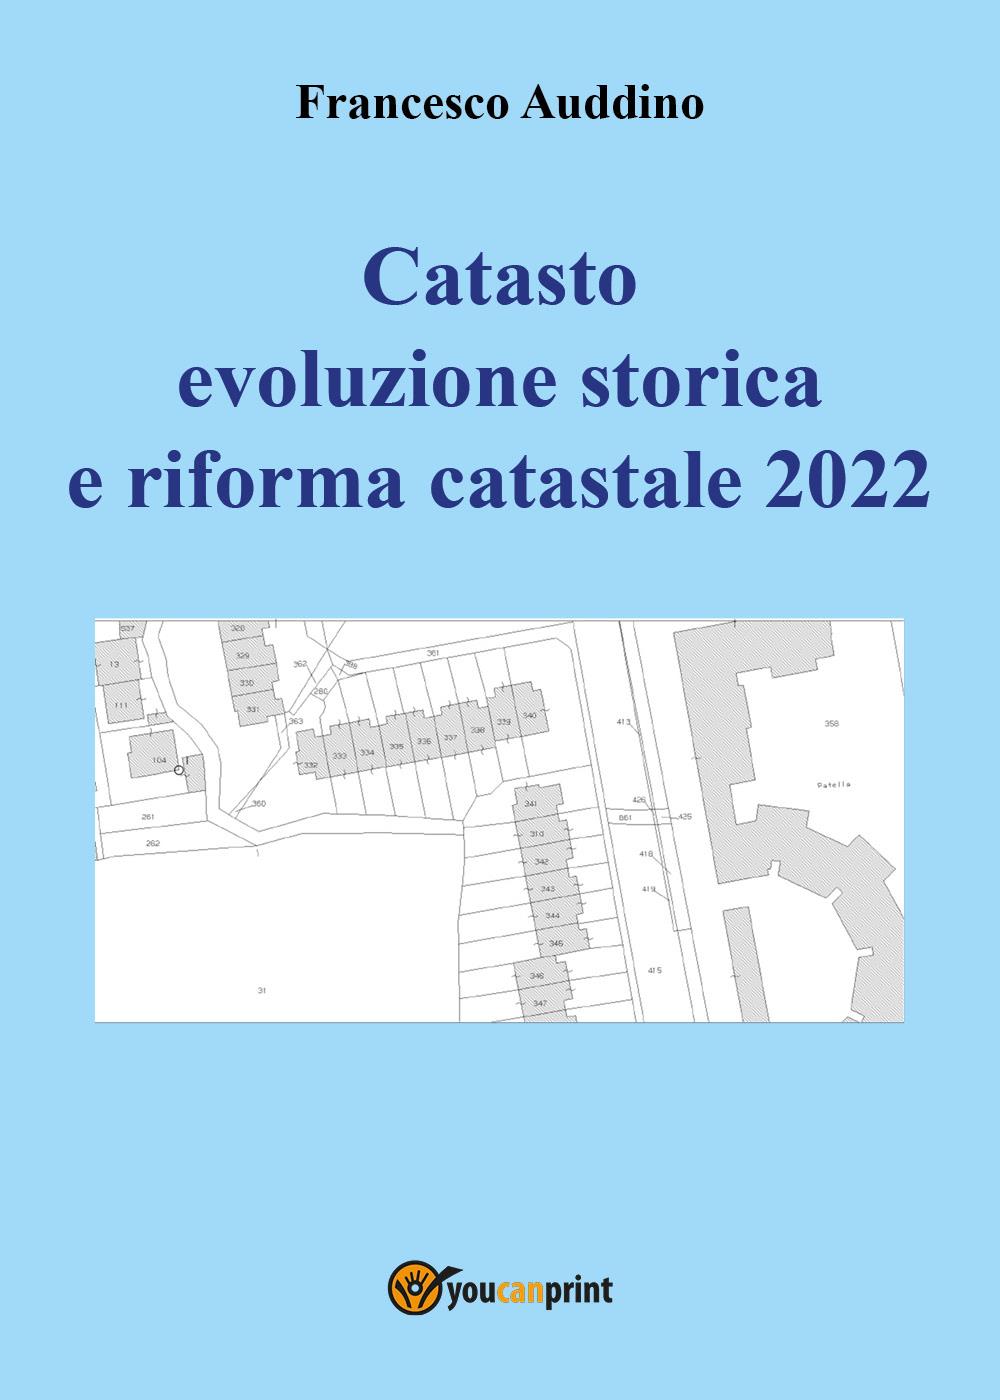 Catasto evoluzione storica e riforma catastale 2022